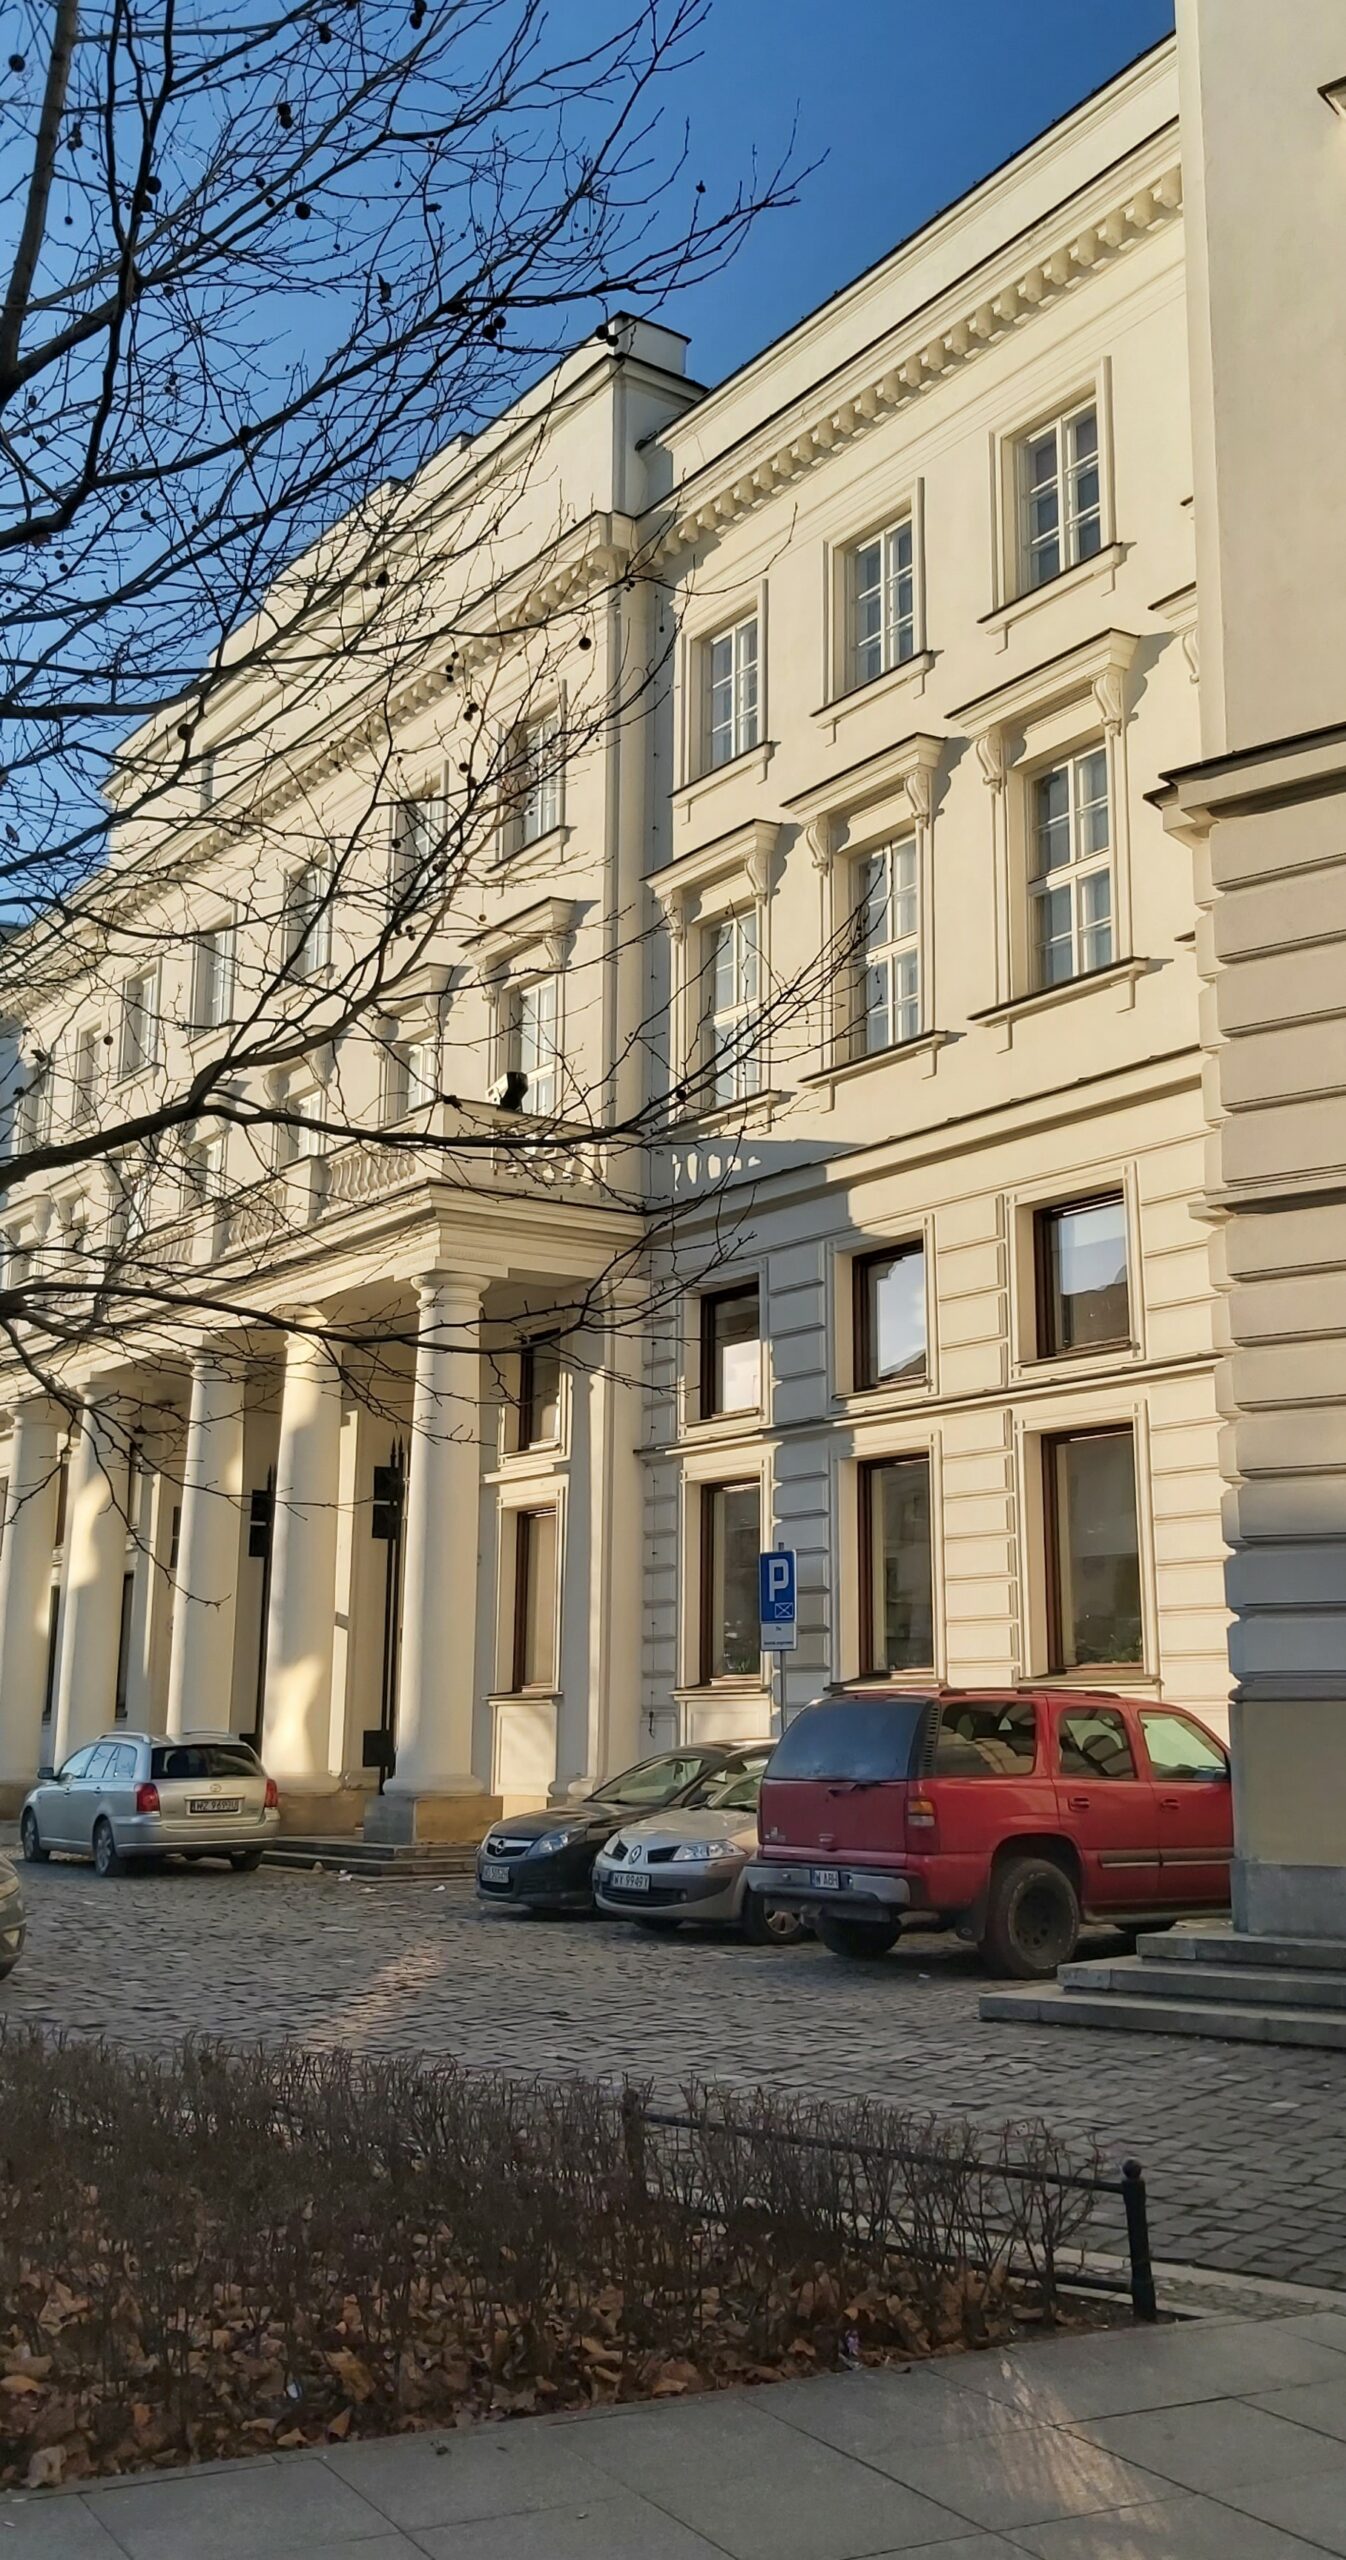 Pałac Staszica w Warszawie